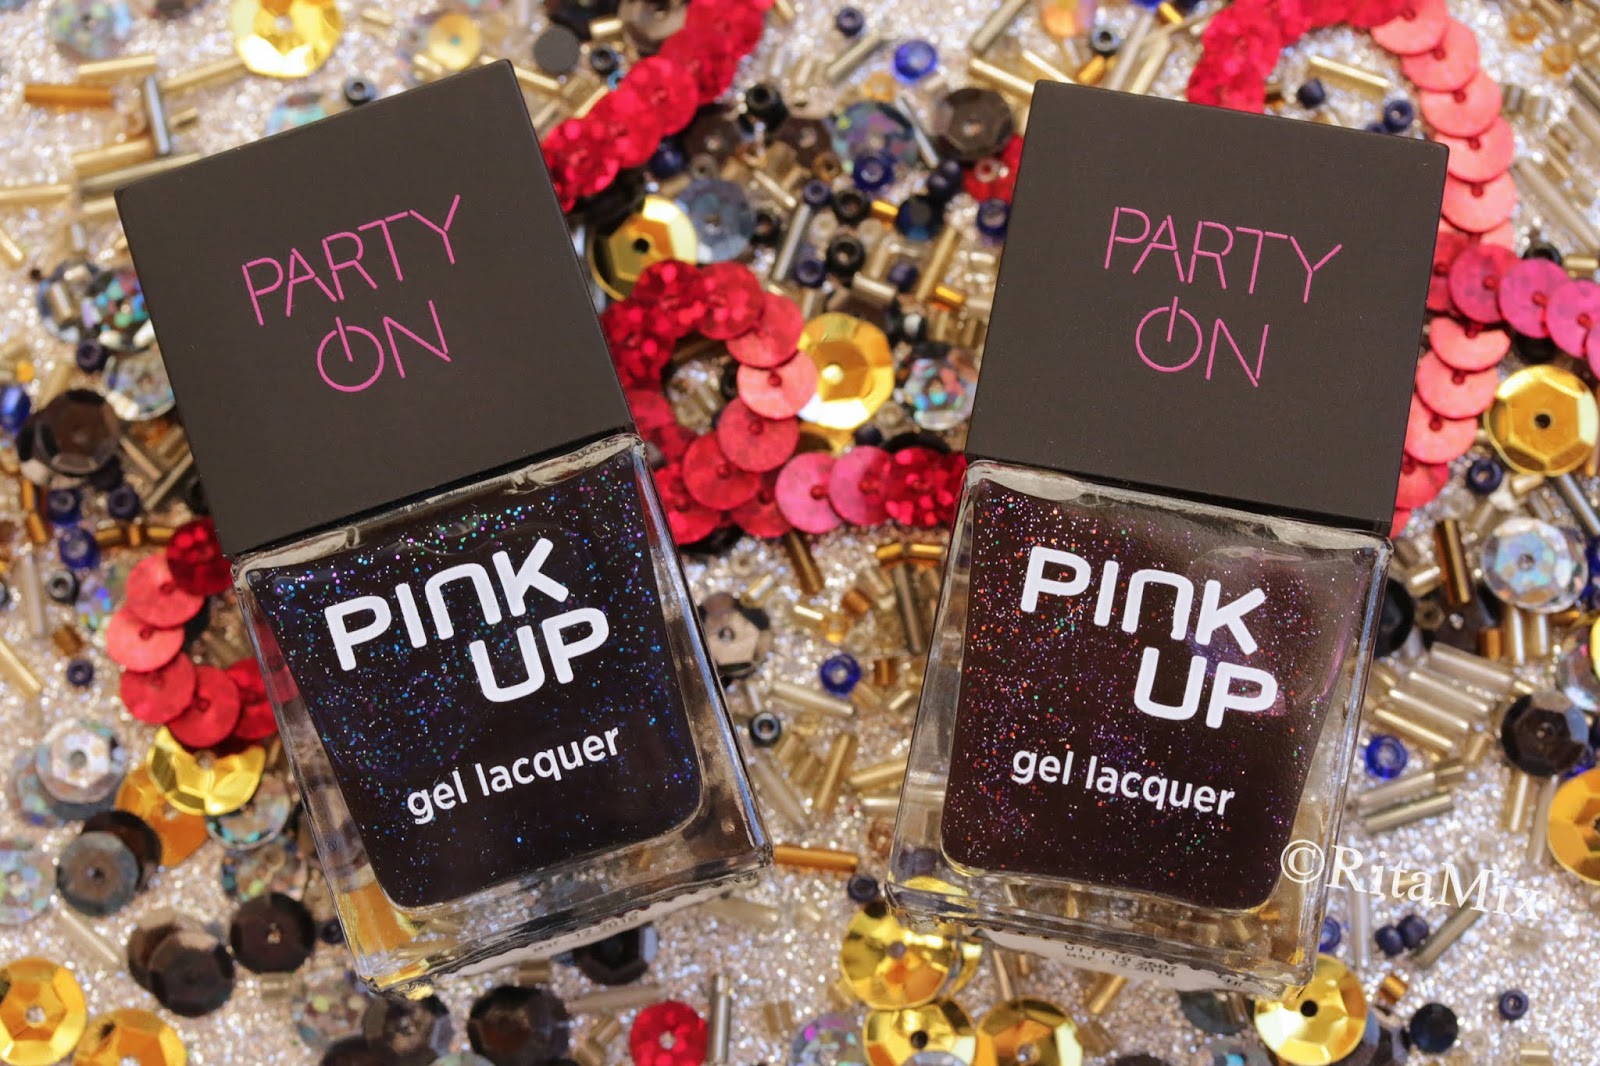 Pink up гель лаки. Under Party коллекция. Ми парти коллекция. Pink up Silk Road лак для ногтей свотчи обзор.